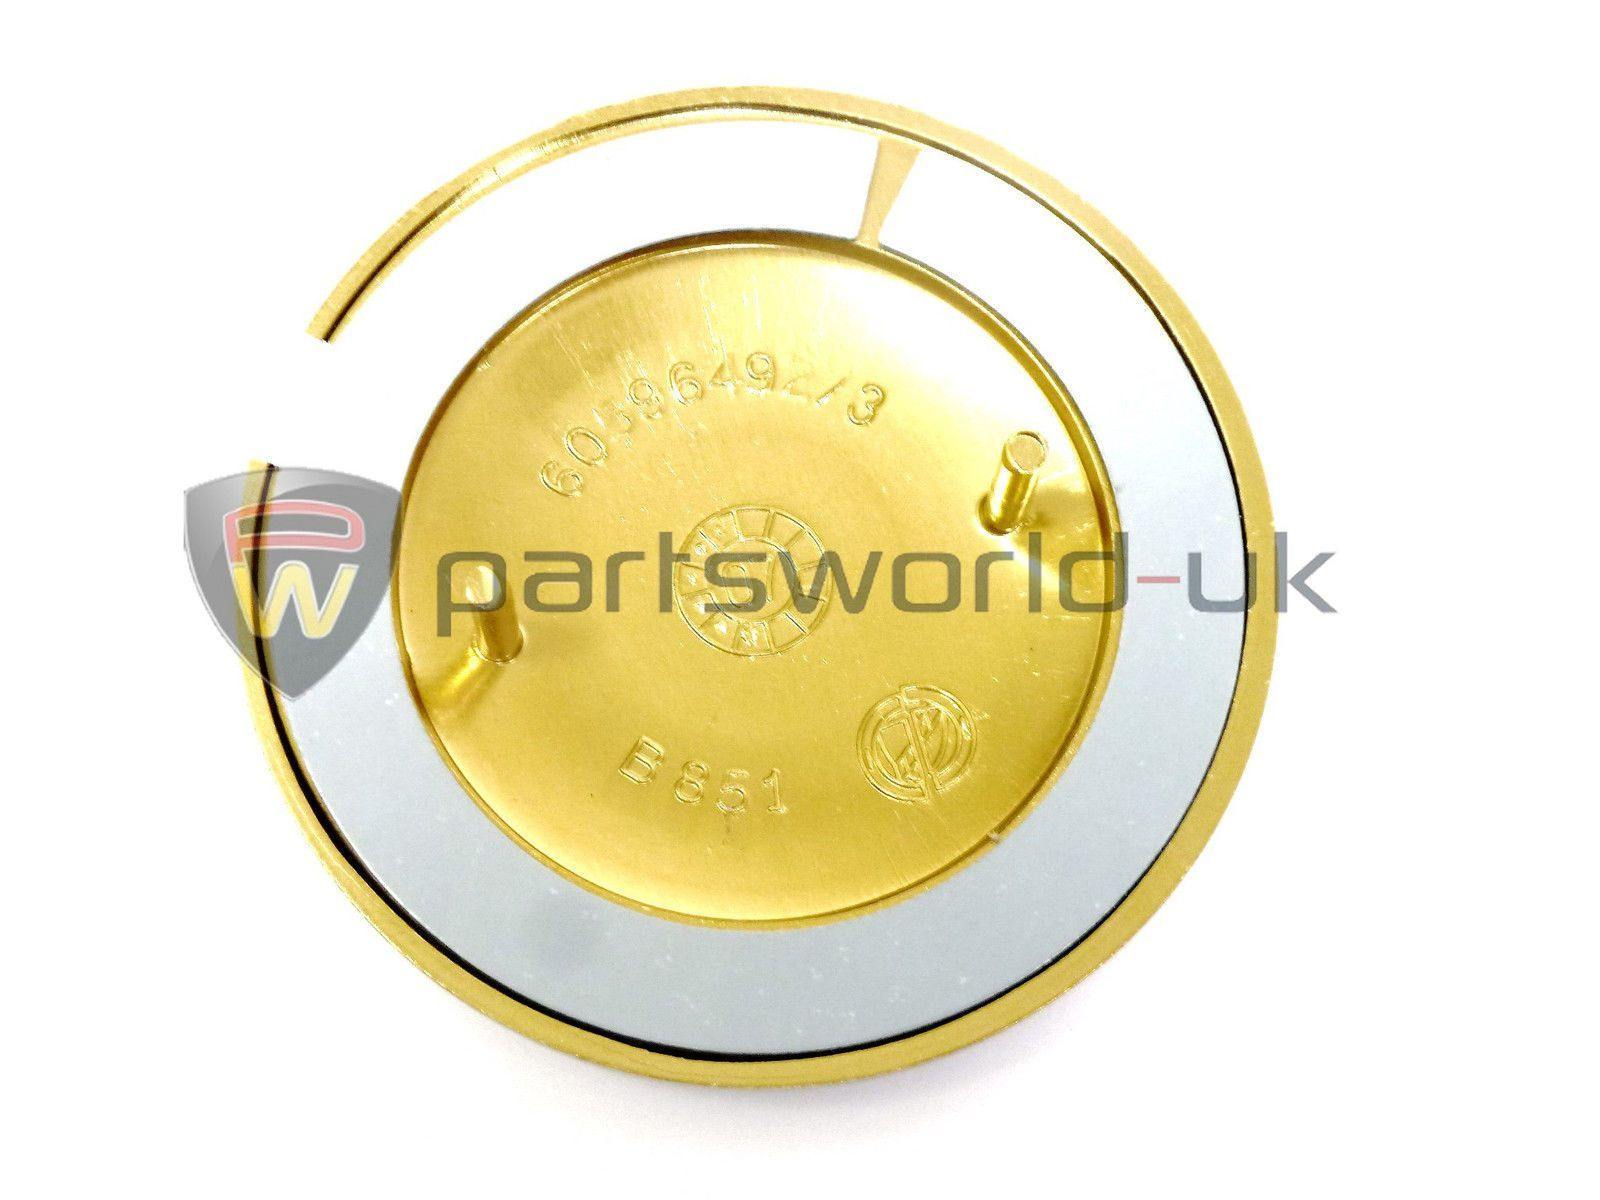 Partsworld-UK